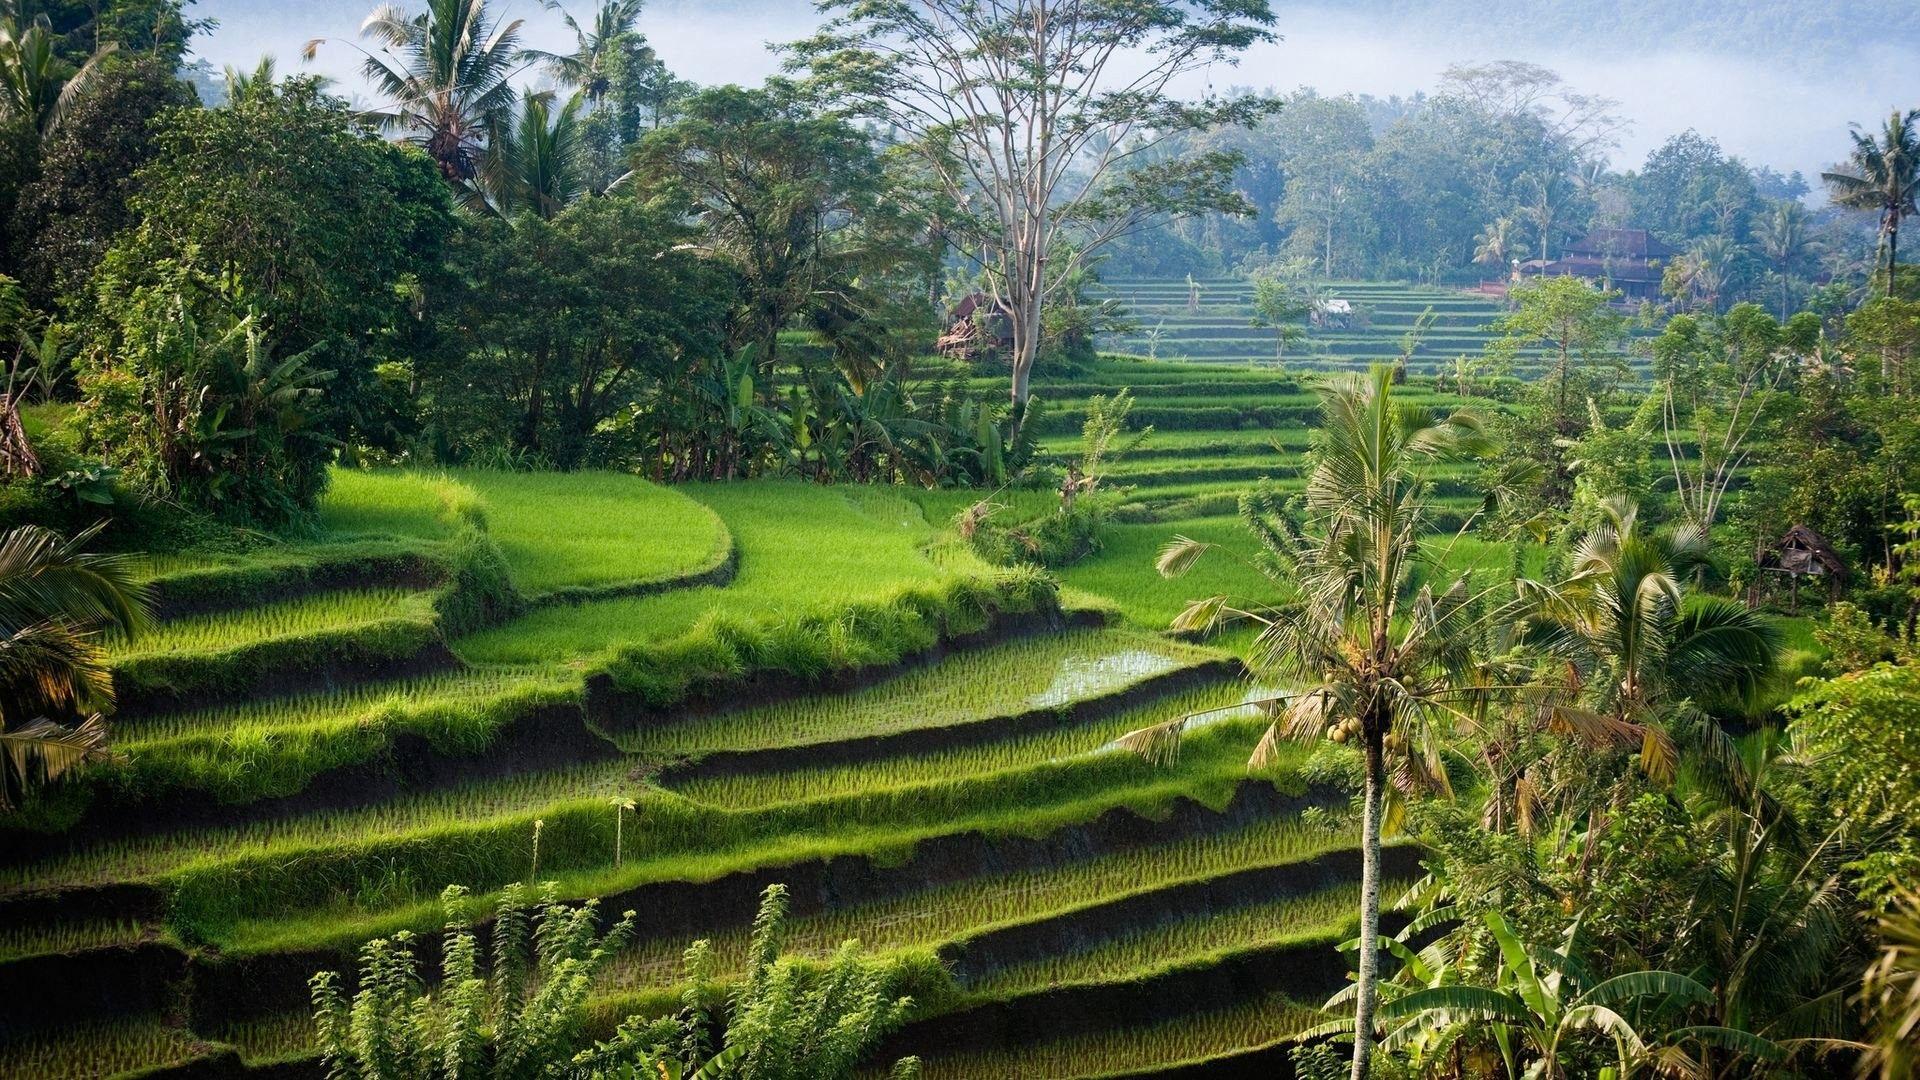 1920x1080 Cánh đồng: Cánh đồng đẹp Indonesia Cây tự nhiên Bali Trang trại ruộng bậc thang